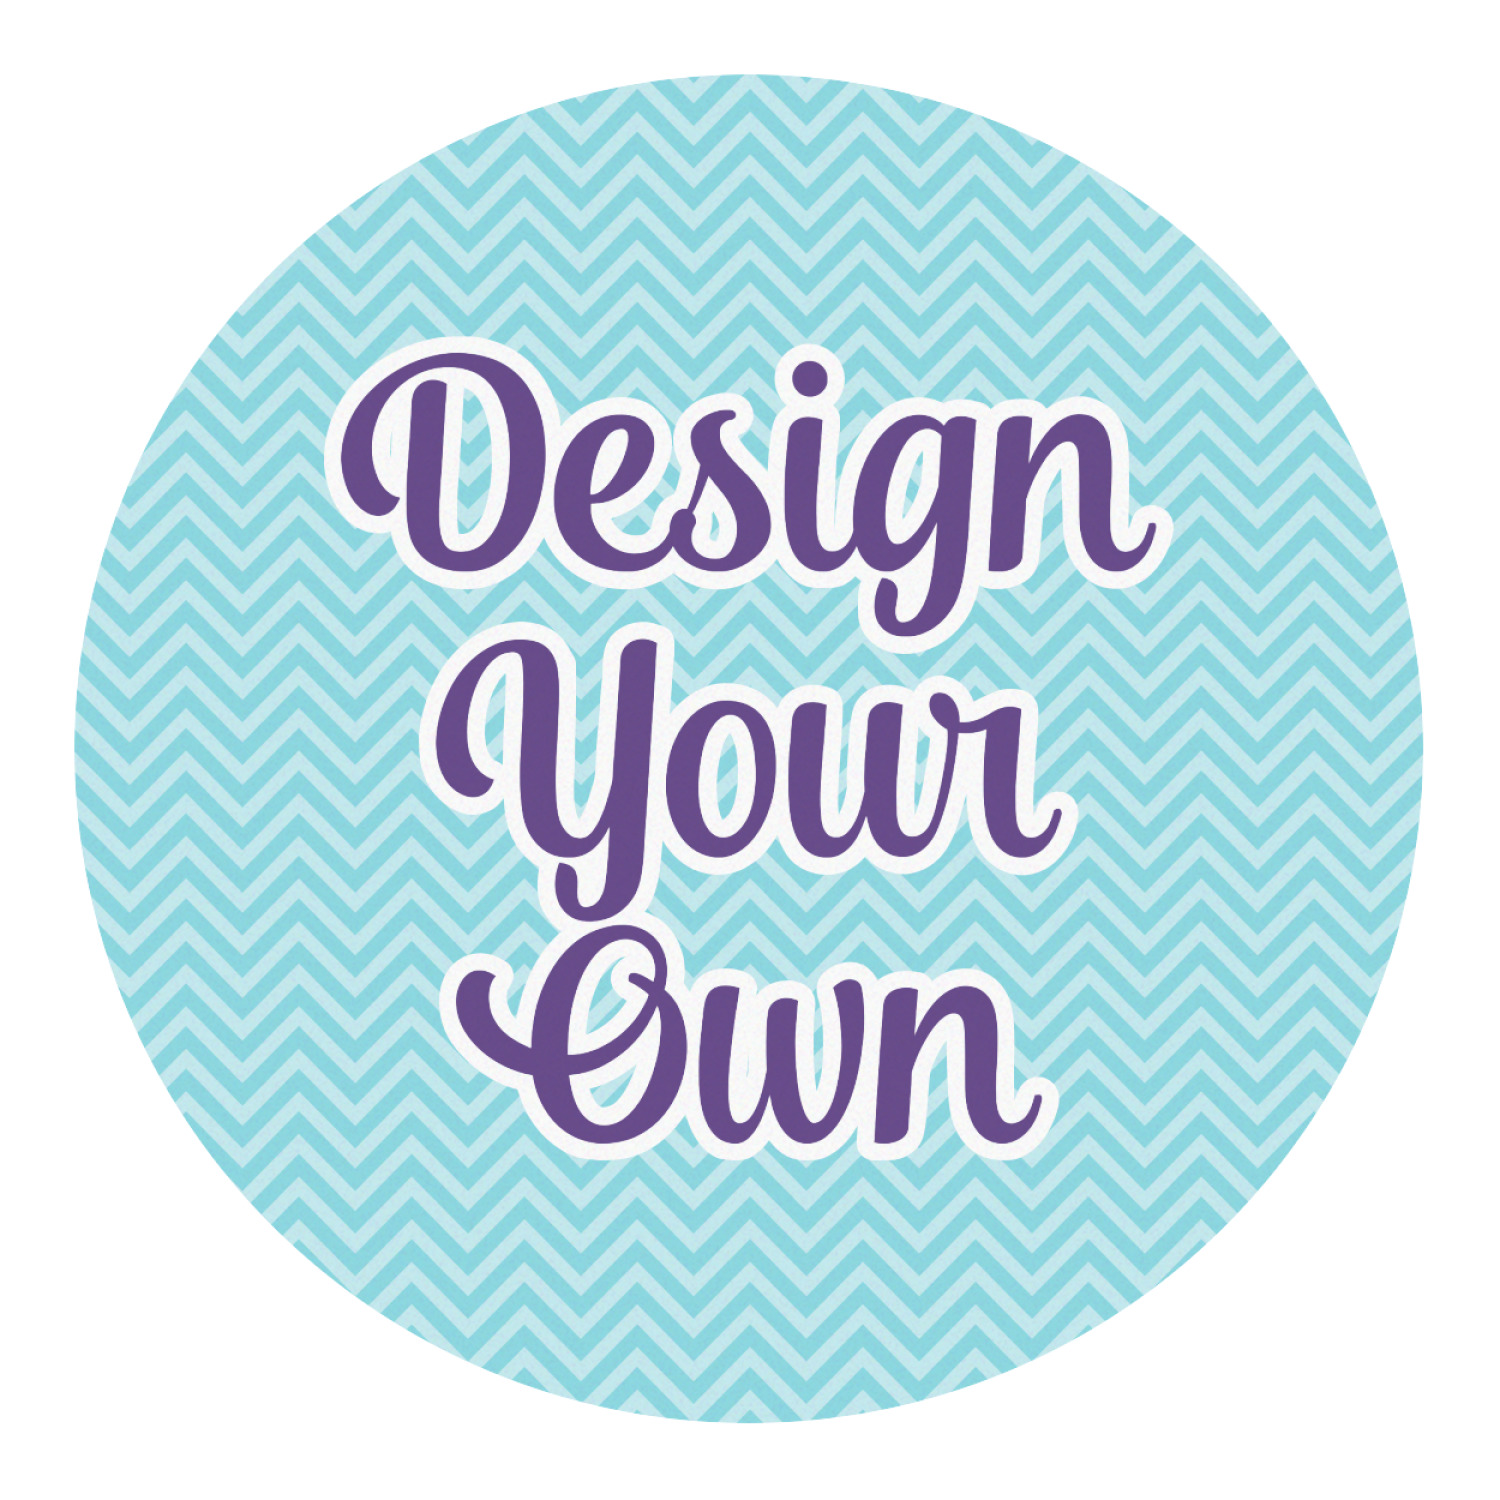 Design you